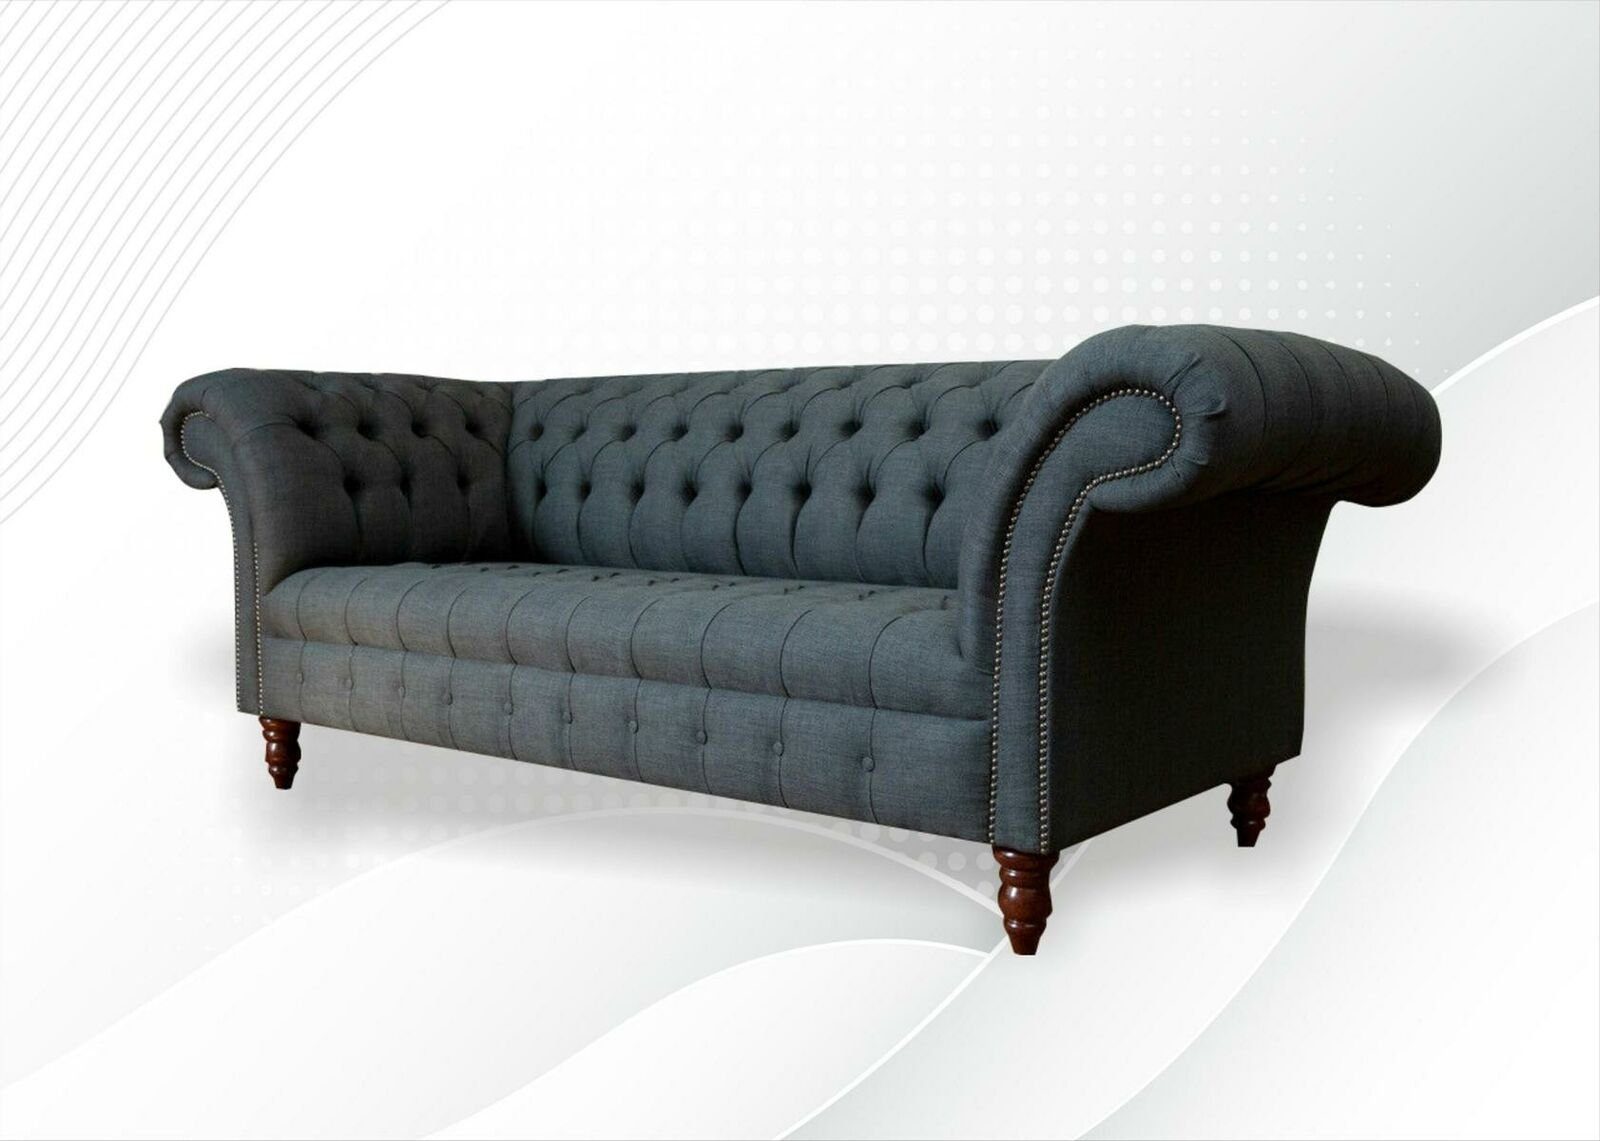 Textil Chesterfield 3 big Möbel Wohnzimmer Couchen Sofa Graue Sitzer Modern JVmoebel xxl Chesterfield-Sofa,